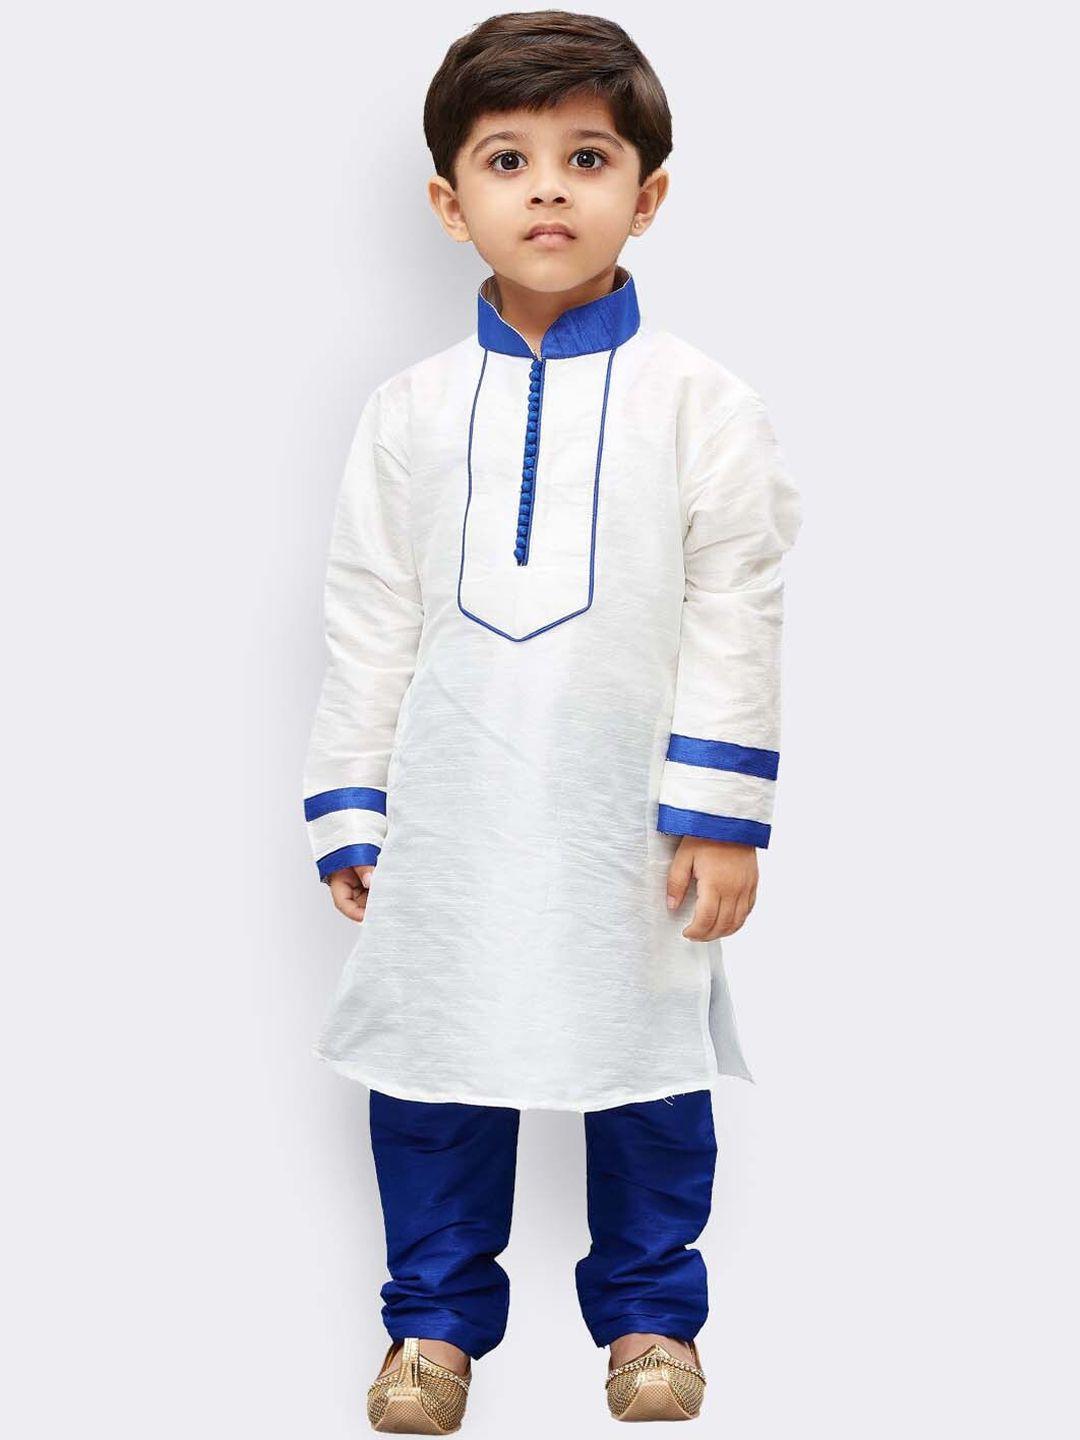 jbn creation boys mandarin collar kurta with churidar